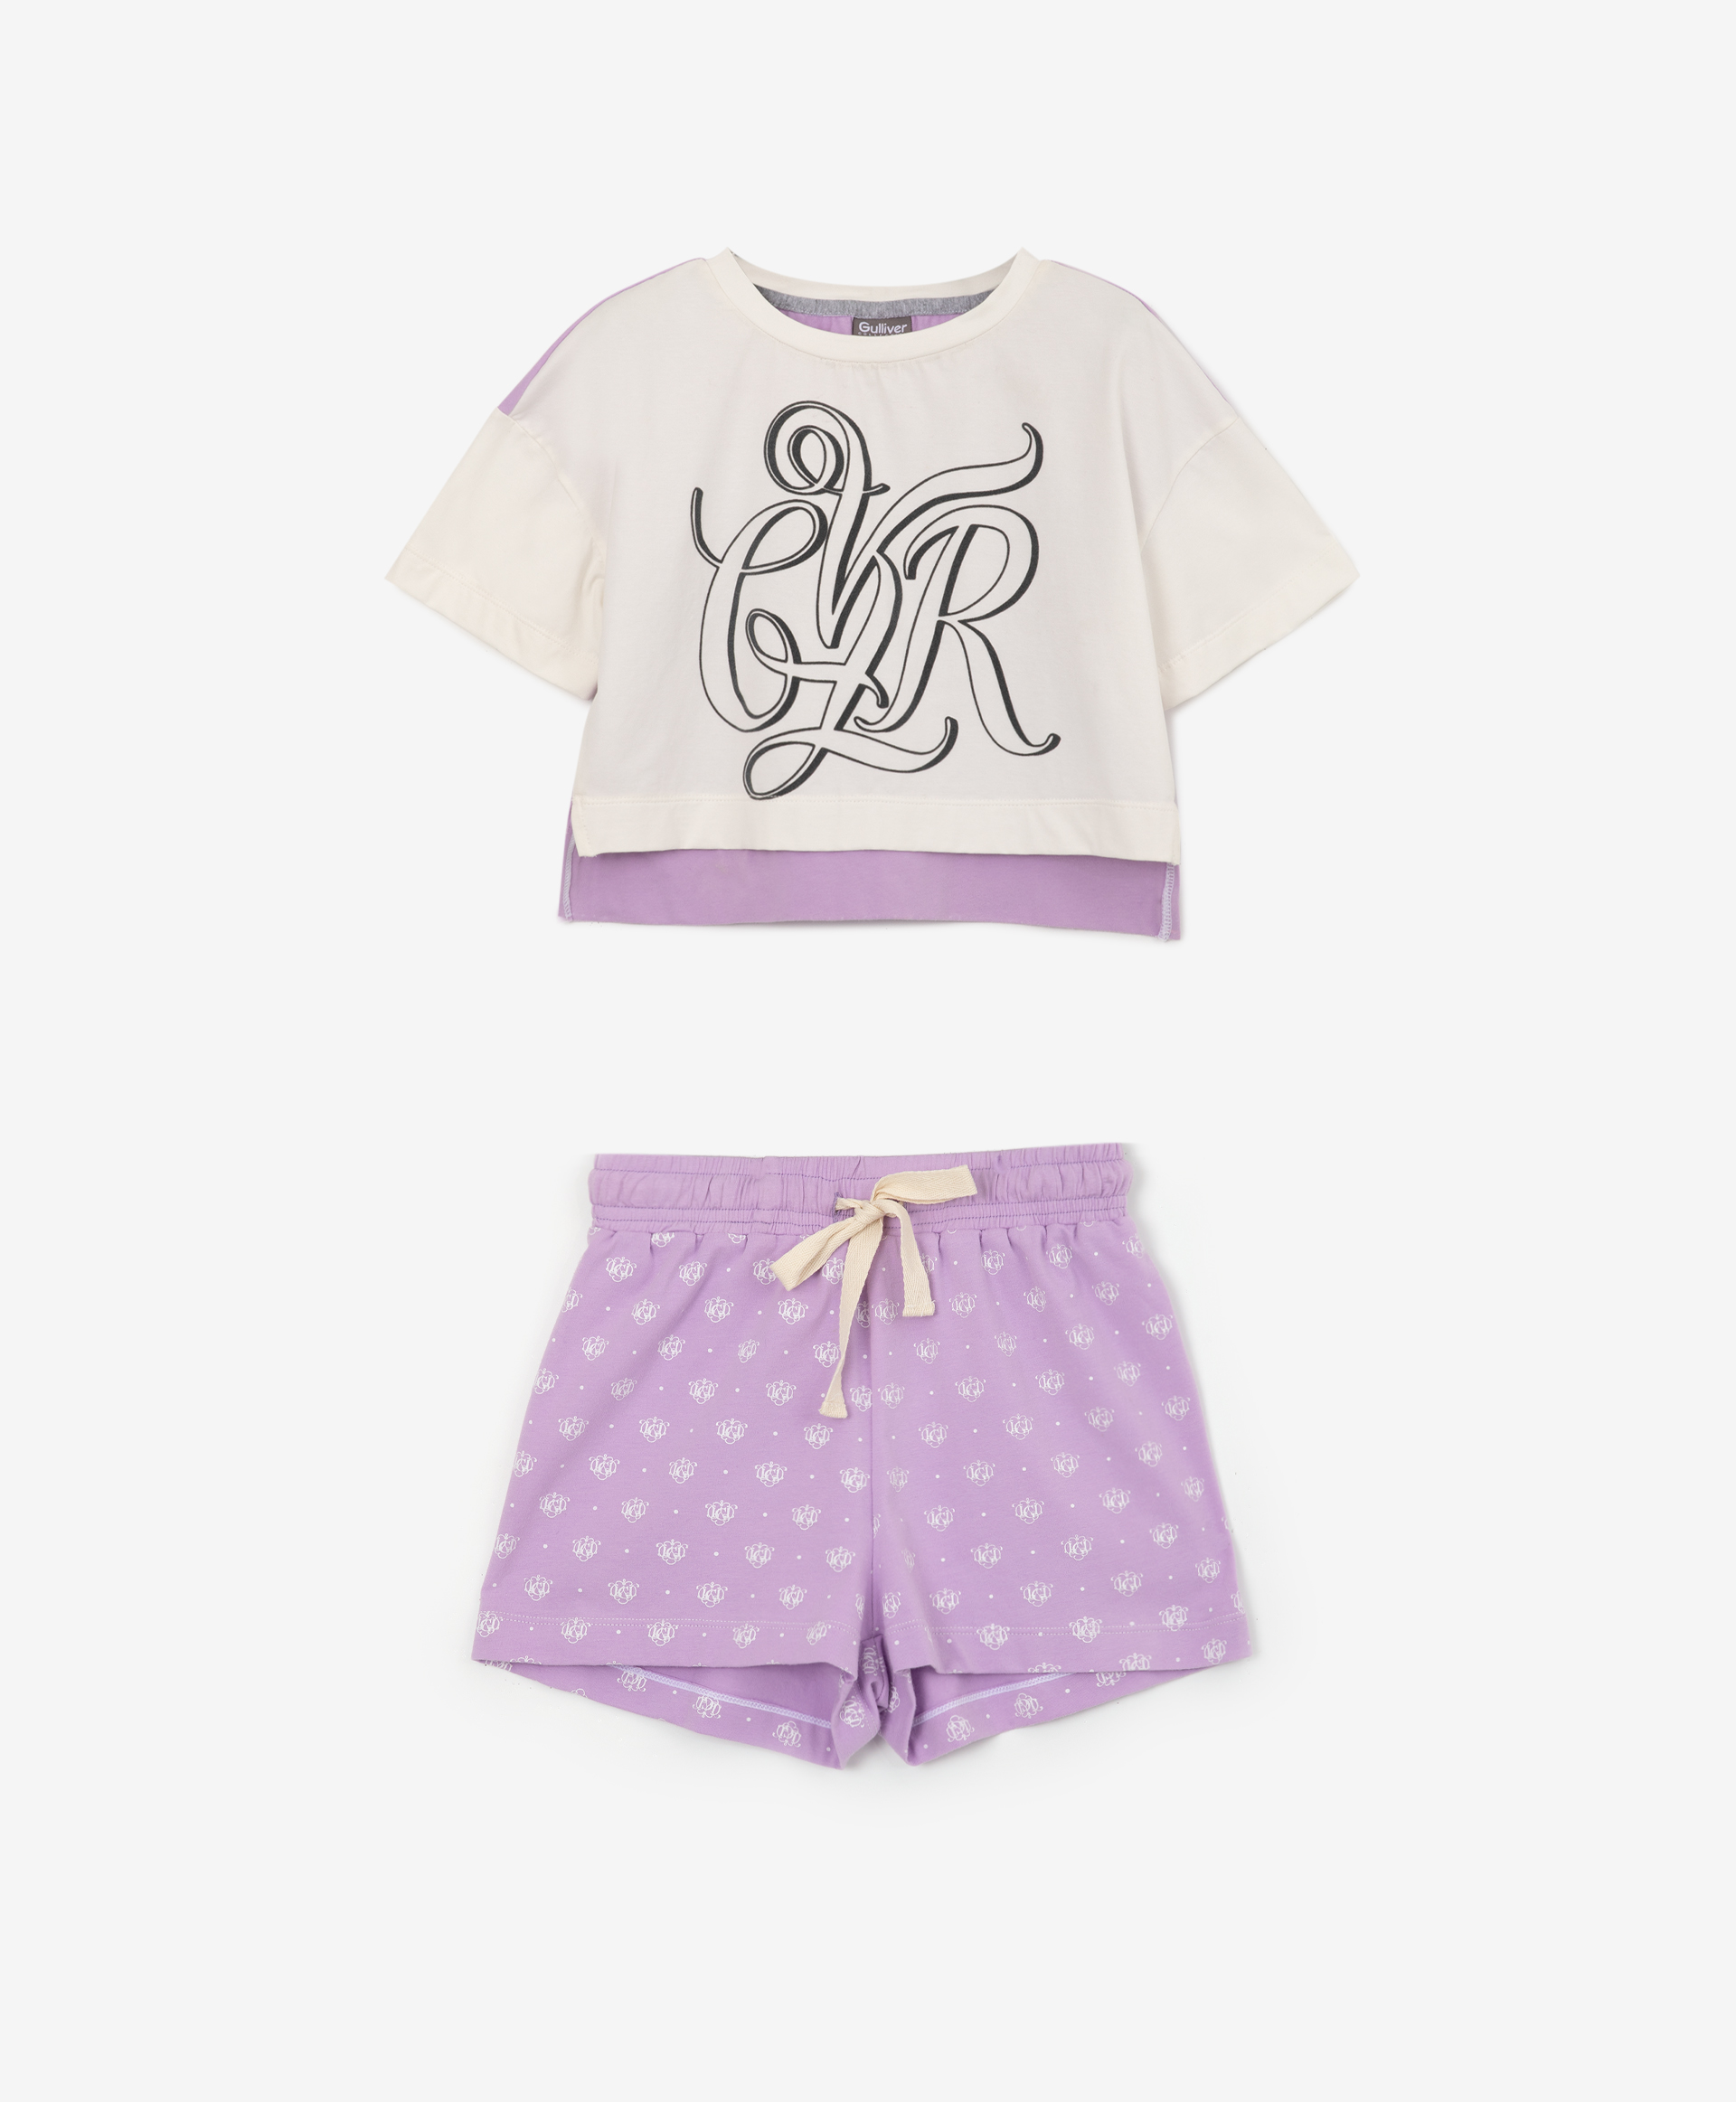 Пижама свободной формы с авторским рисунком Gulliver 22200GC9701, размер 110-116, цвет фиолетовый